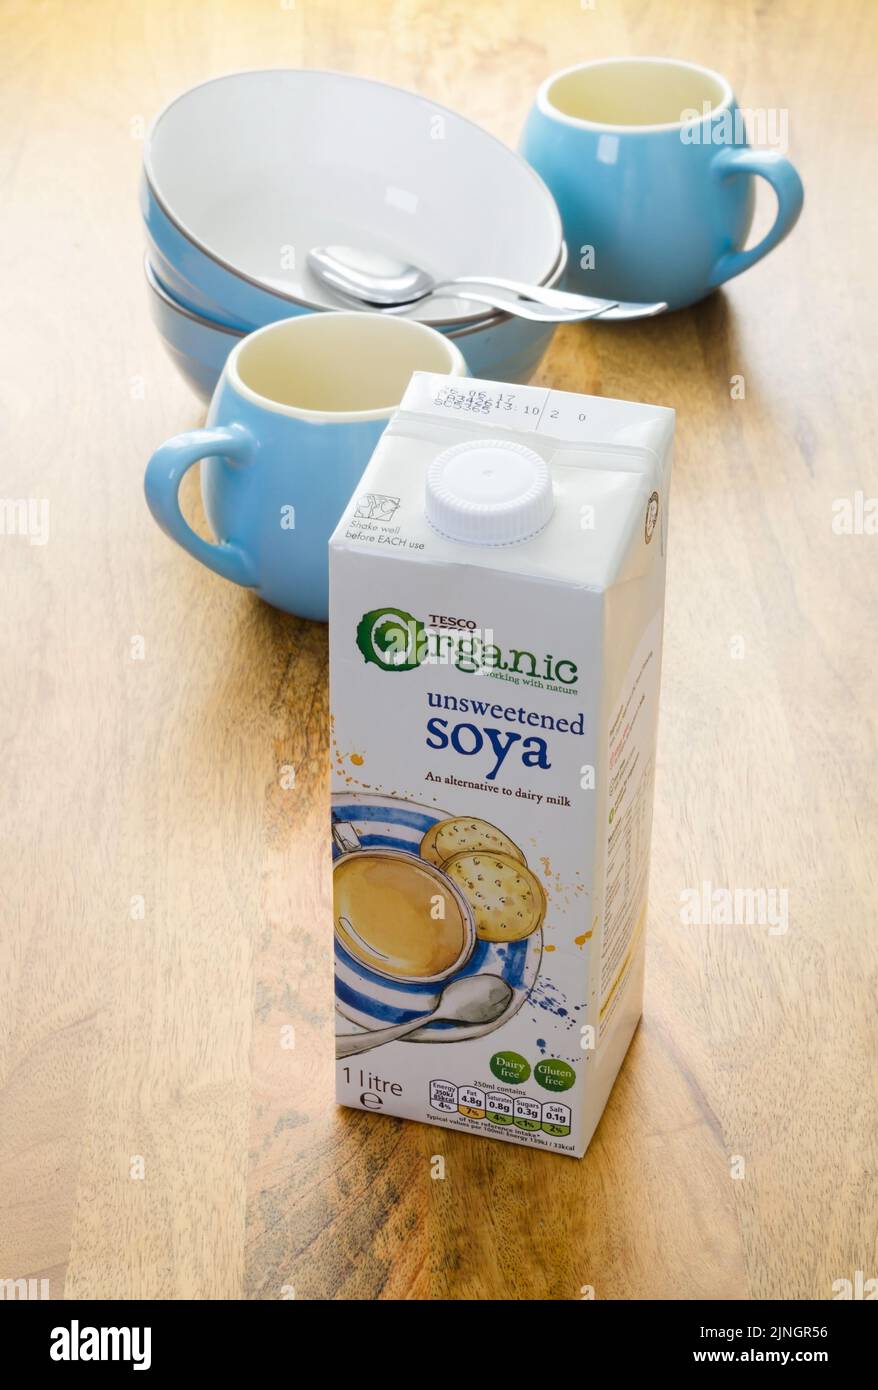 Carton de lait de soja bio non sucré de marque Tesco. Le lait de soja est une altern sans gluten et sans lait Banque D'Images